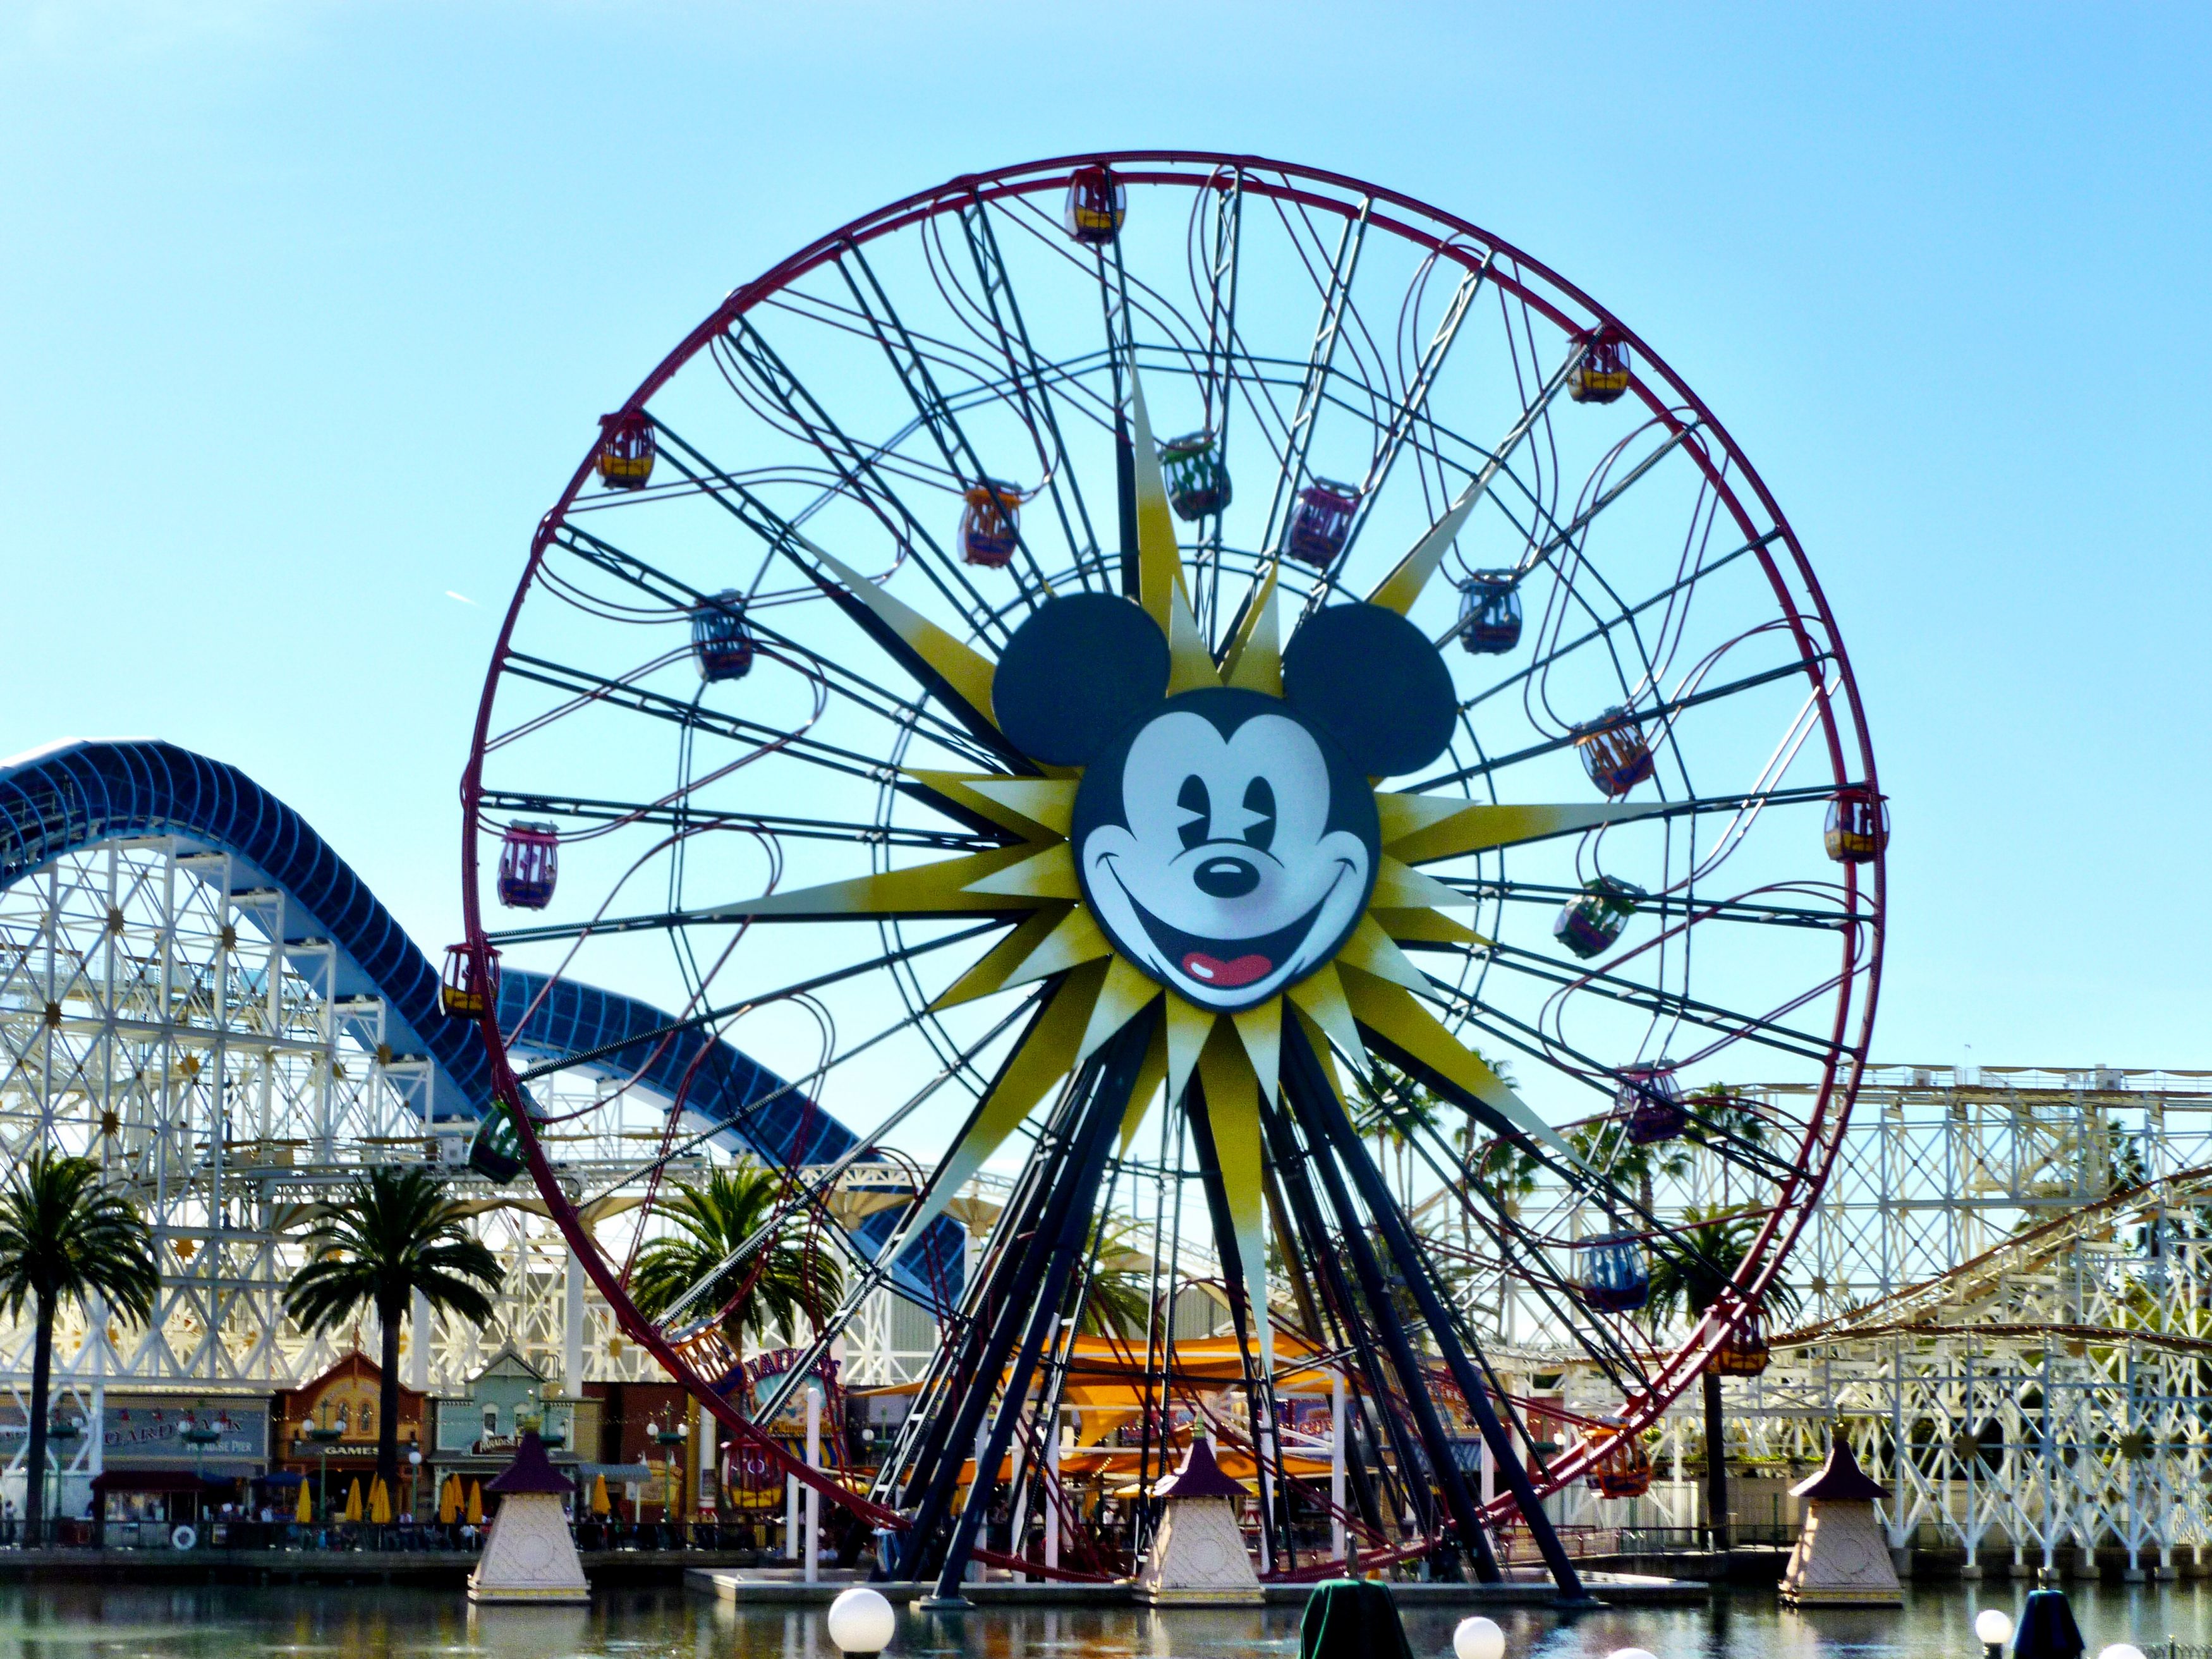 Disneyland in Anaheim, California - Married with Wanderlust